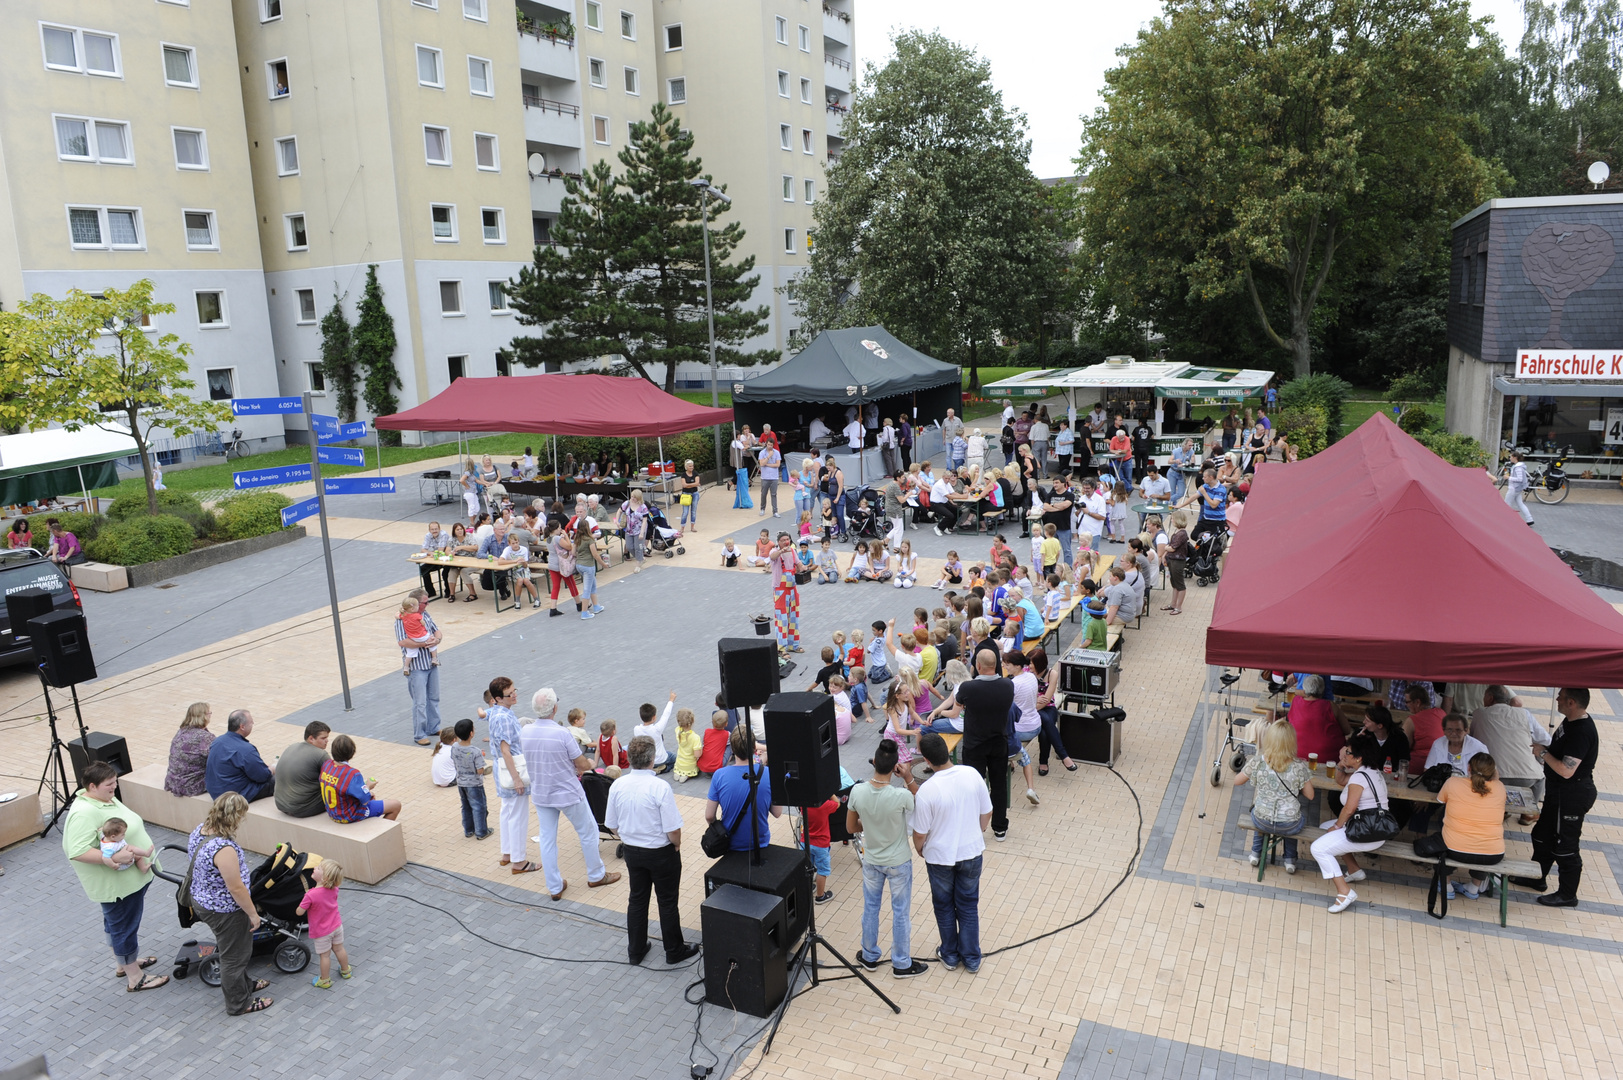 Stadtteilfest in einer Wohnsiedlung in C-R  NRW